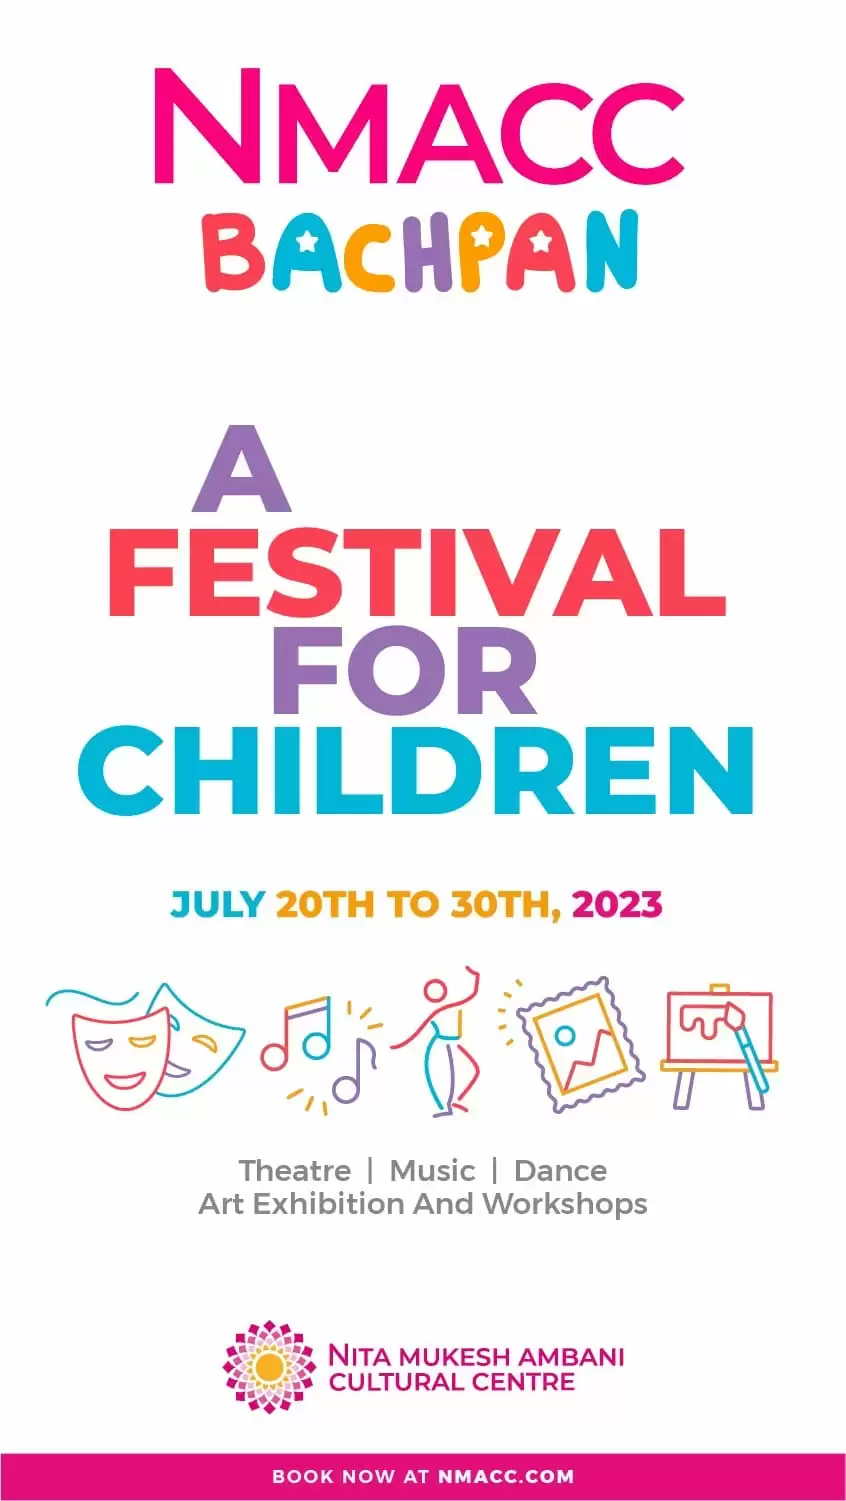 A festival for children